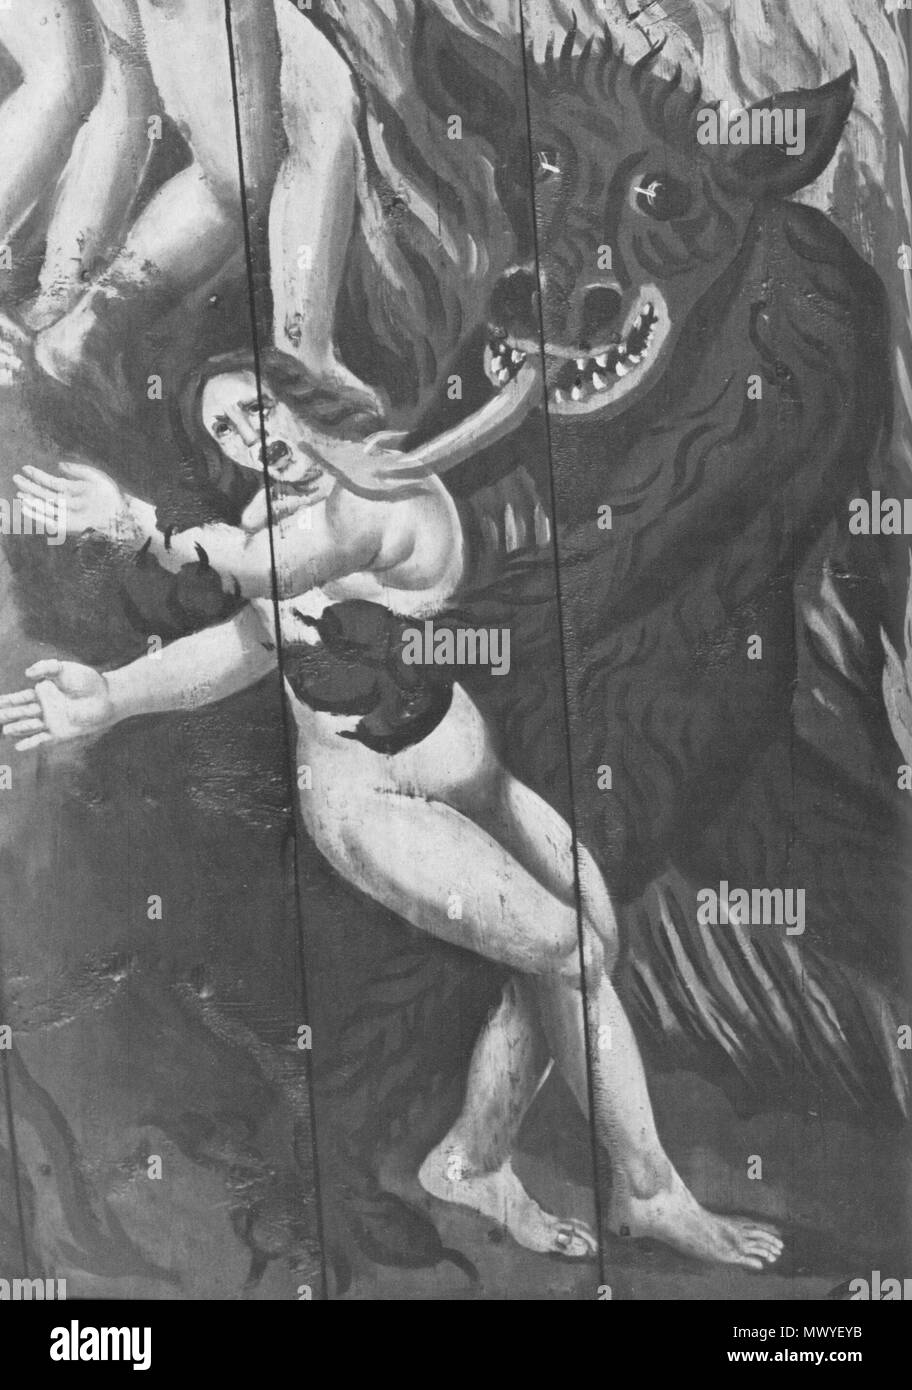 . Englisch: Der Teufel fängt eine Frau. Detail der Wandmalerei in der Kirche von Trosa, Schweden. Mittelalter.. Unbekannt 162 Teufel nimmt Frau Stockfoto